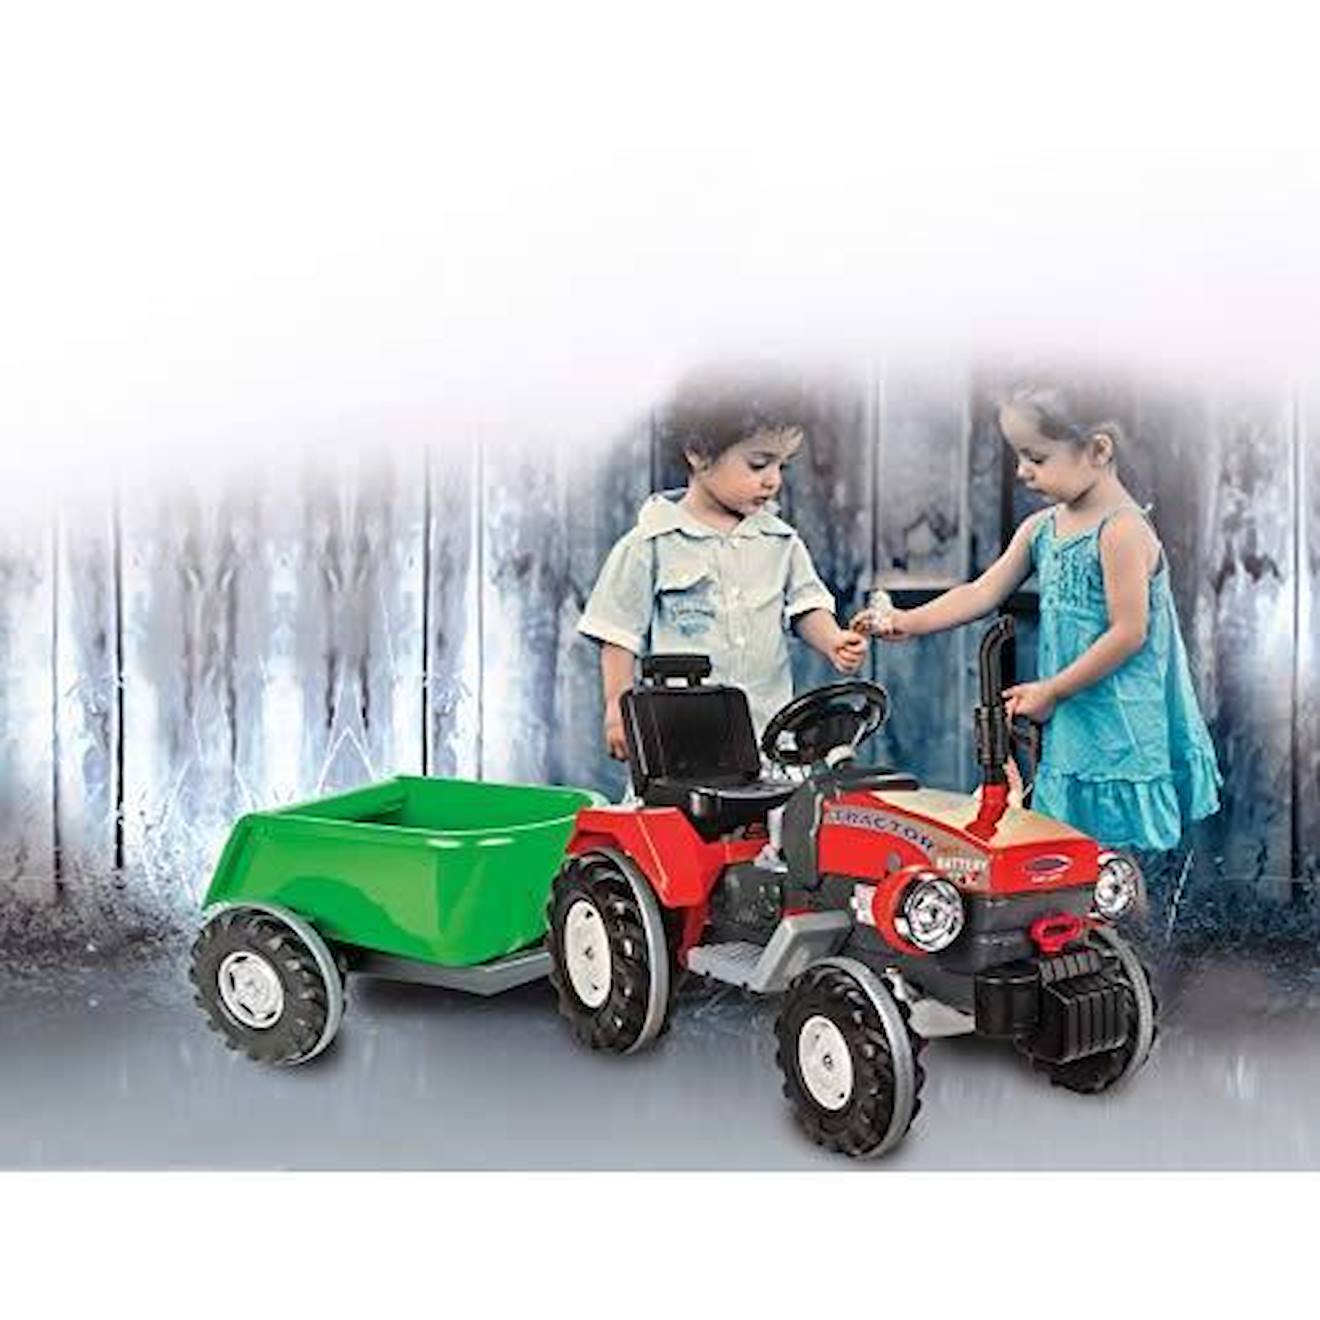 Remorque Ride-on Vert Pour Traktor Power Drag - Jamara - Convient Aux Enfants - Mixte - A Partir De 